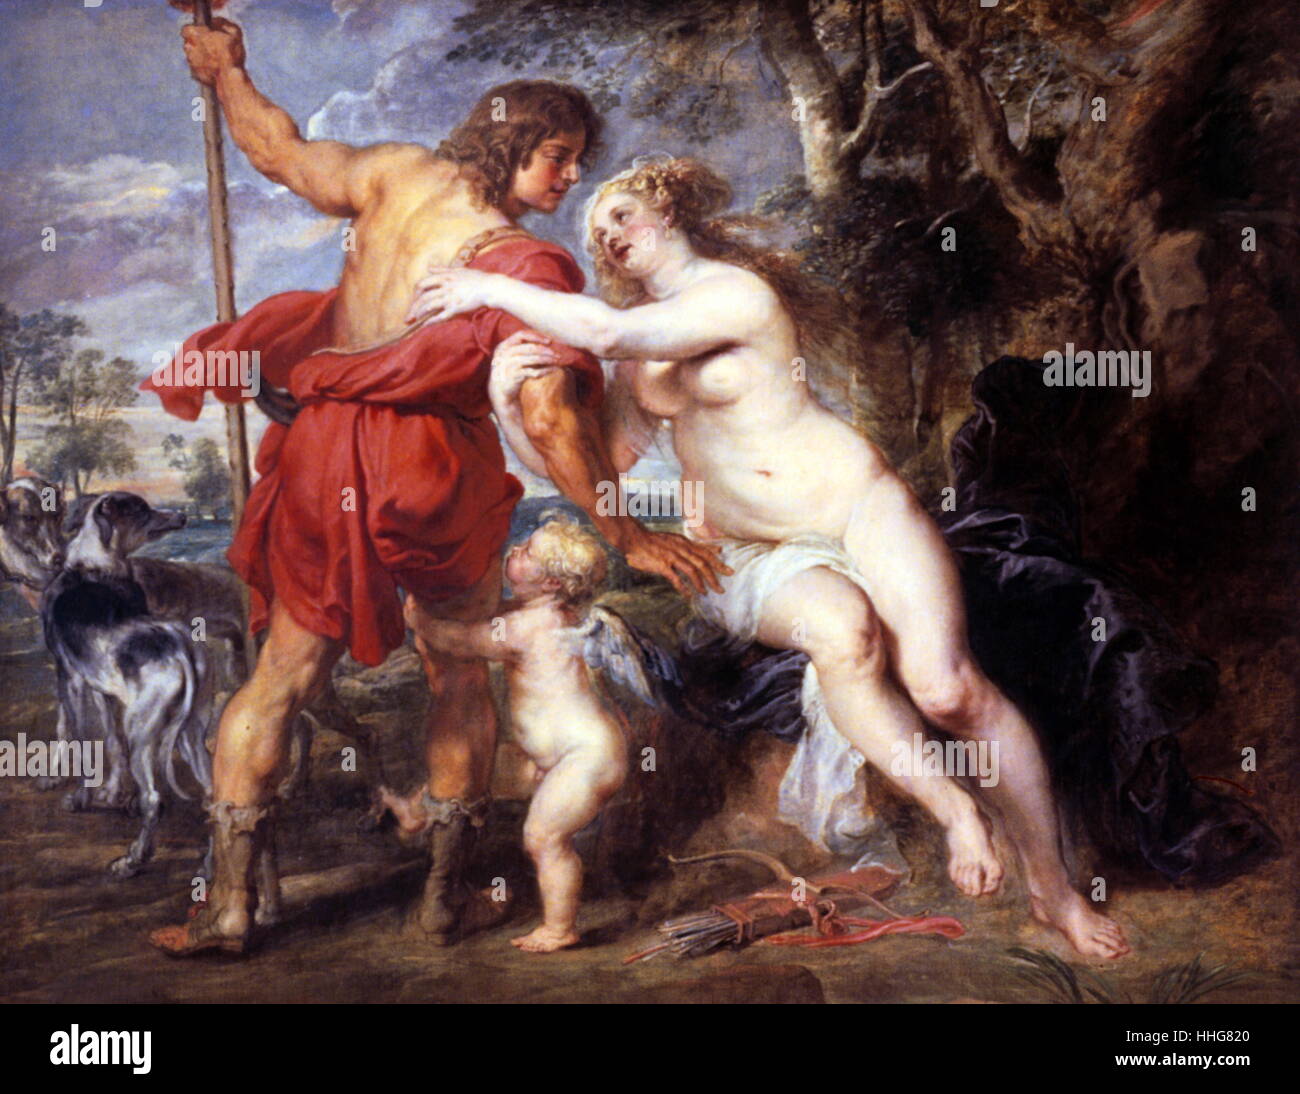 Venere e Adone; mid-1630s; Olio su tela, (Cincinnati Art Museum). Da Peter Paul Rubens (1577 - 1640). Basato su Ovidio della storia, Metamorfosi (8 A. D). Pungere con uno di Cupido di frecce, Venere si innamora di Adone cacciatore. Rubens è nato a Siegen in Germania, ma dall'età di dieci anni ha vissuto ed è andato a scuola ad Anversa, in Belgio, dove divenne un importante artista fiammingo. Foto Stock